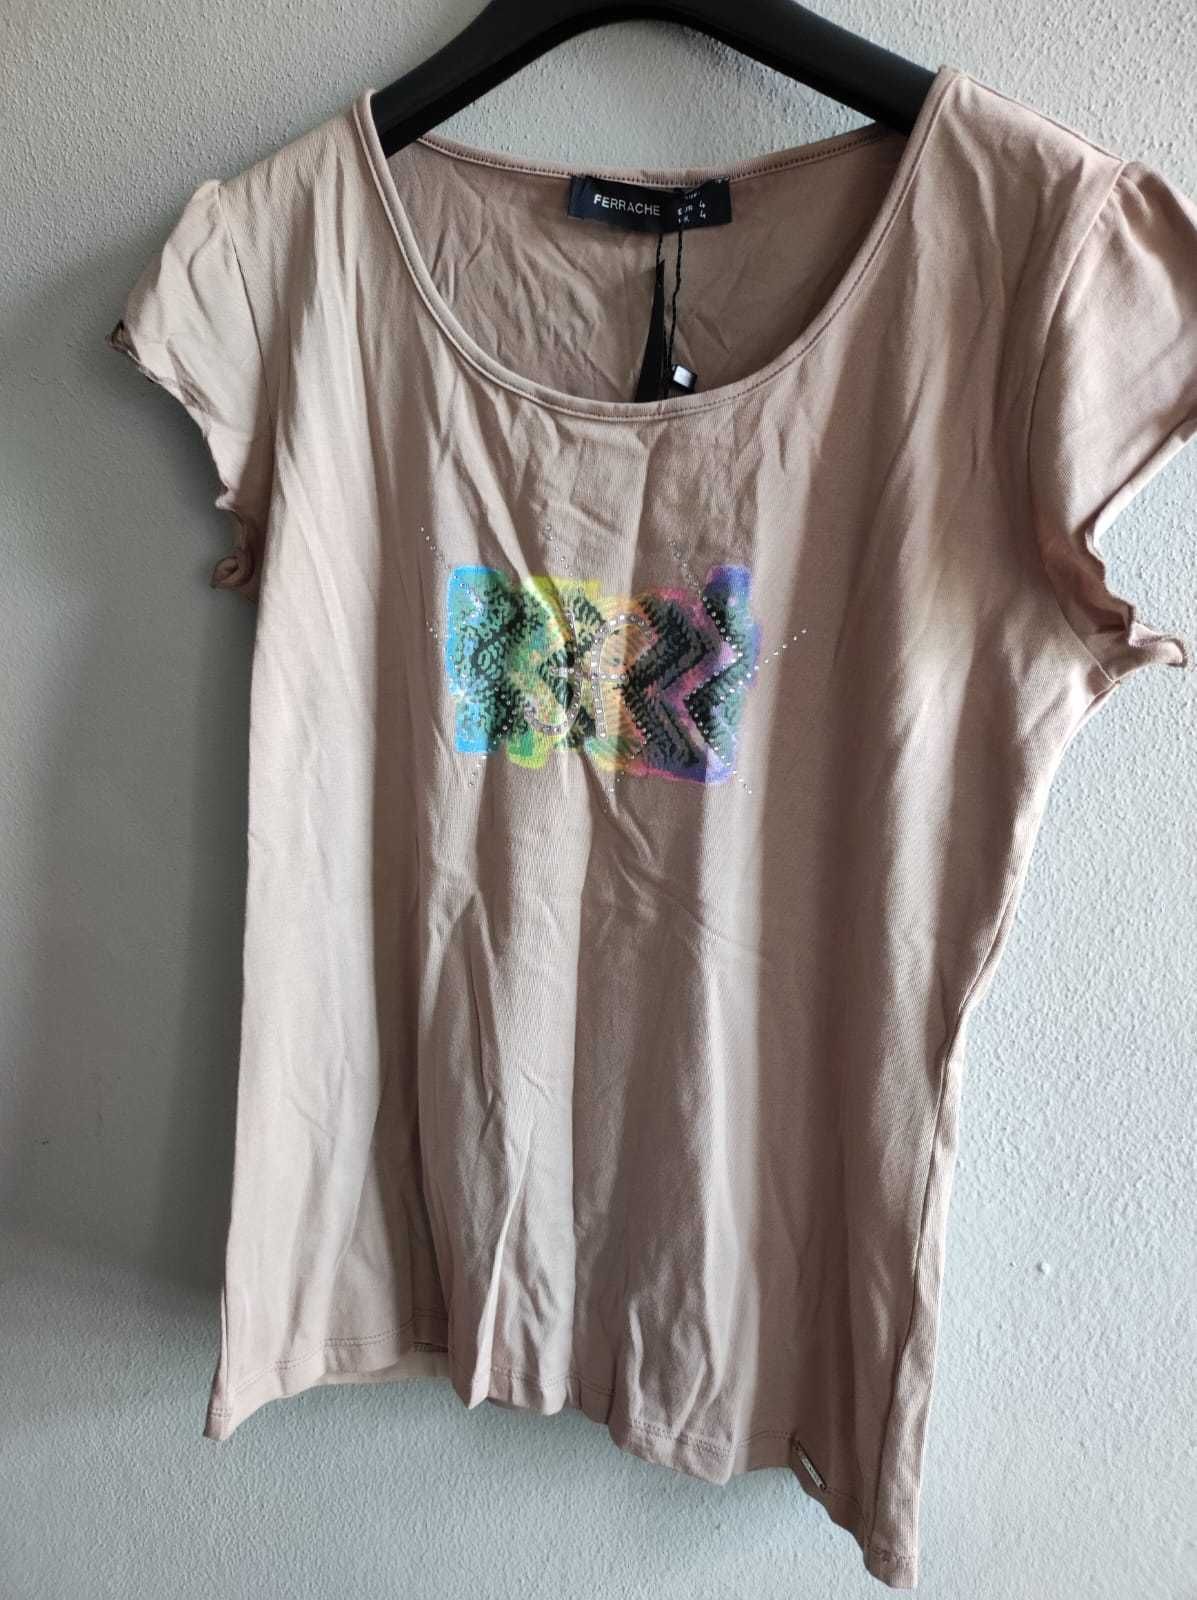 T-shirt's de mulher com etiqueta ( Recheio de loja )